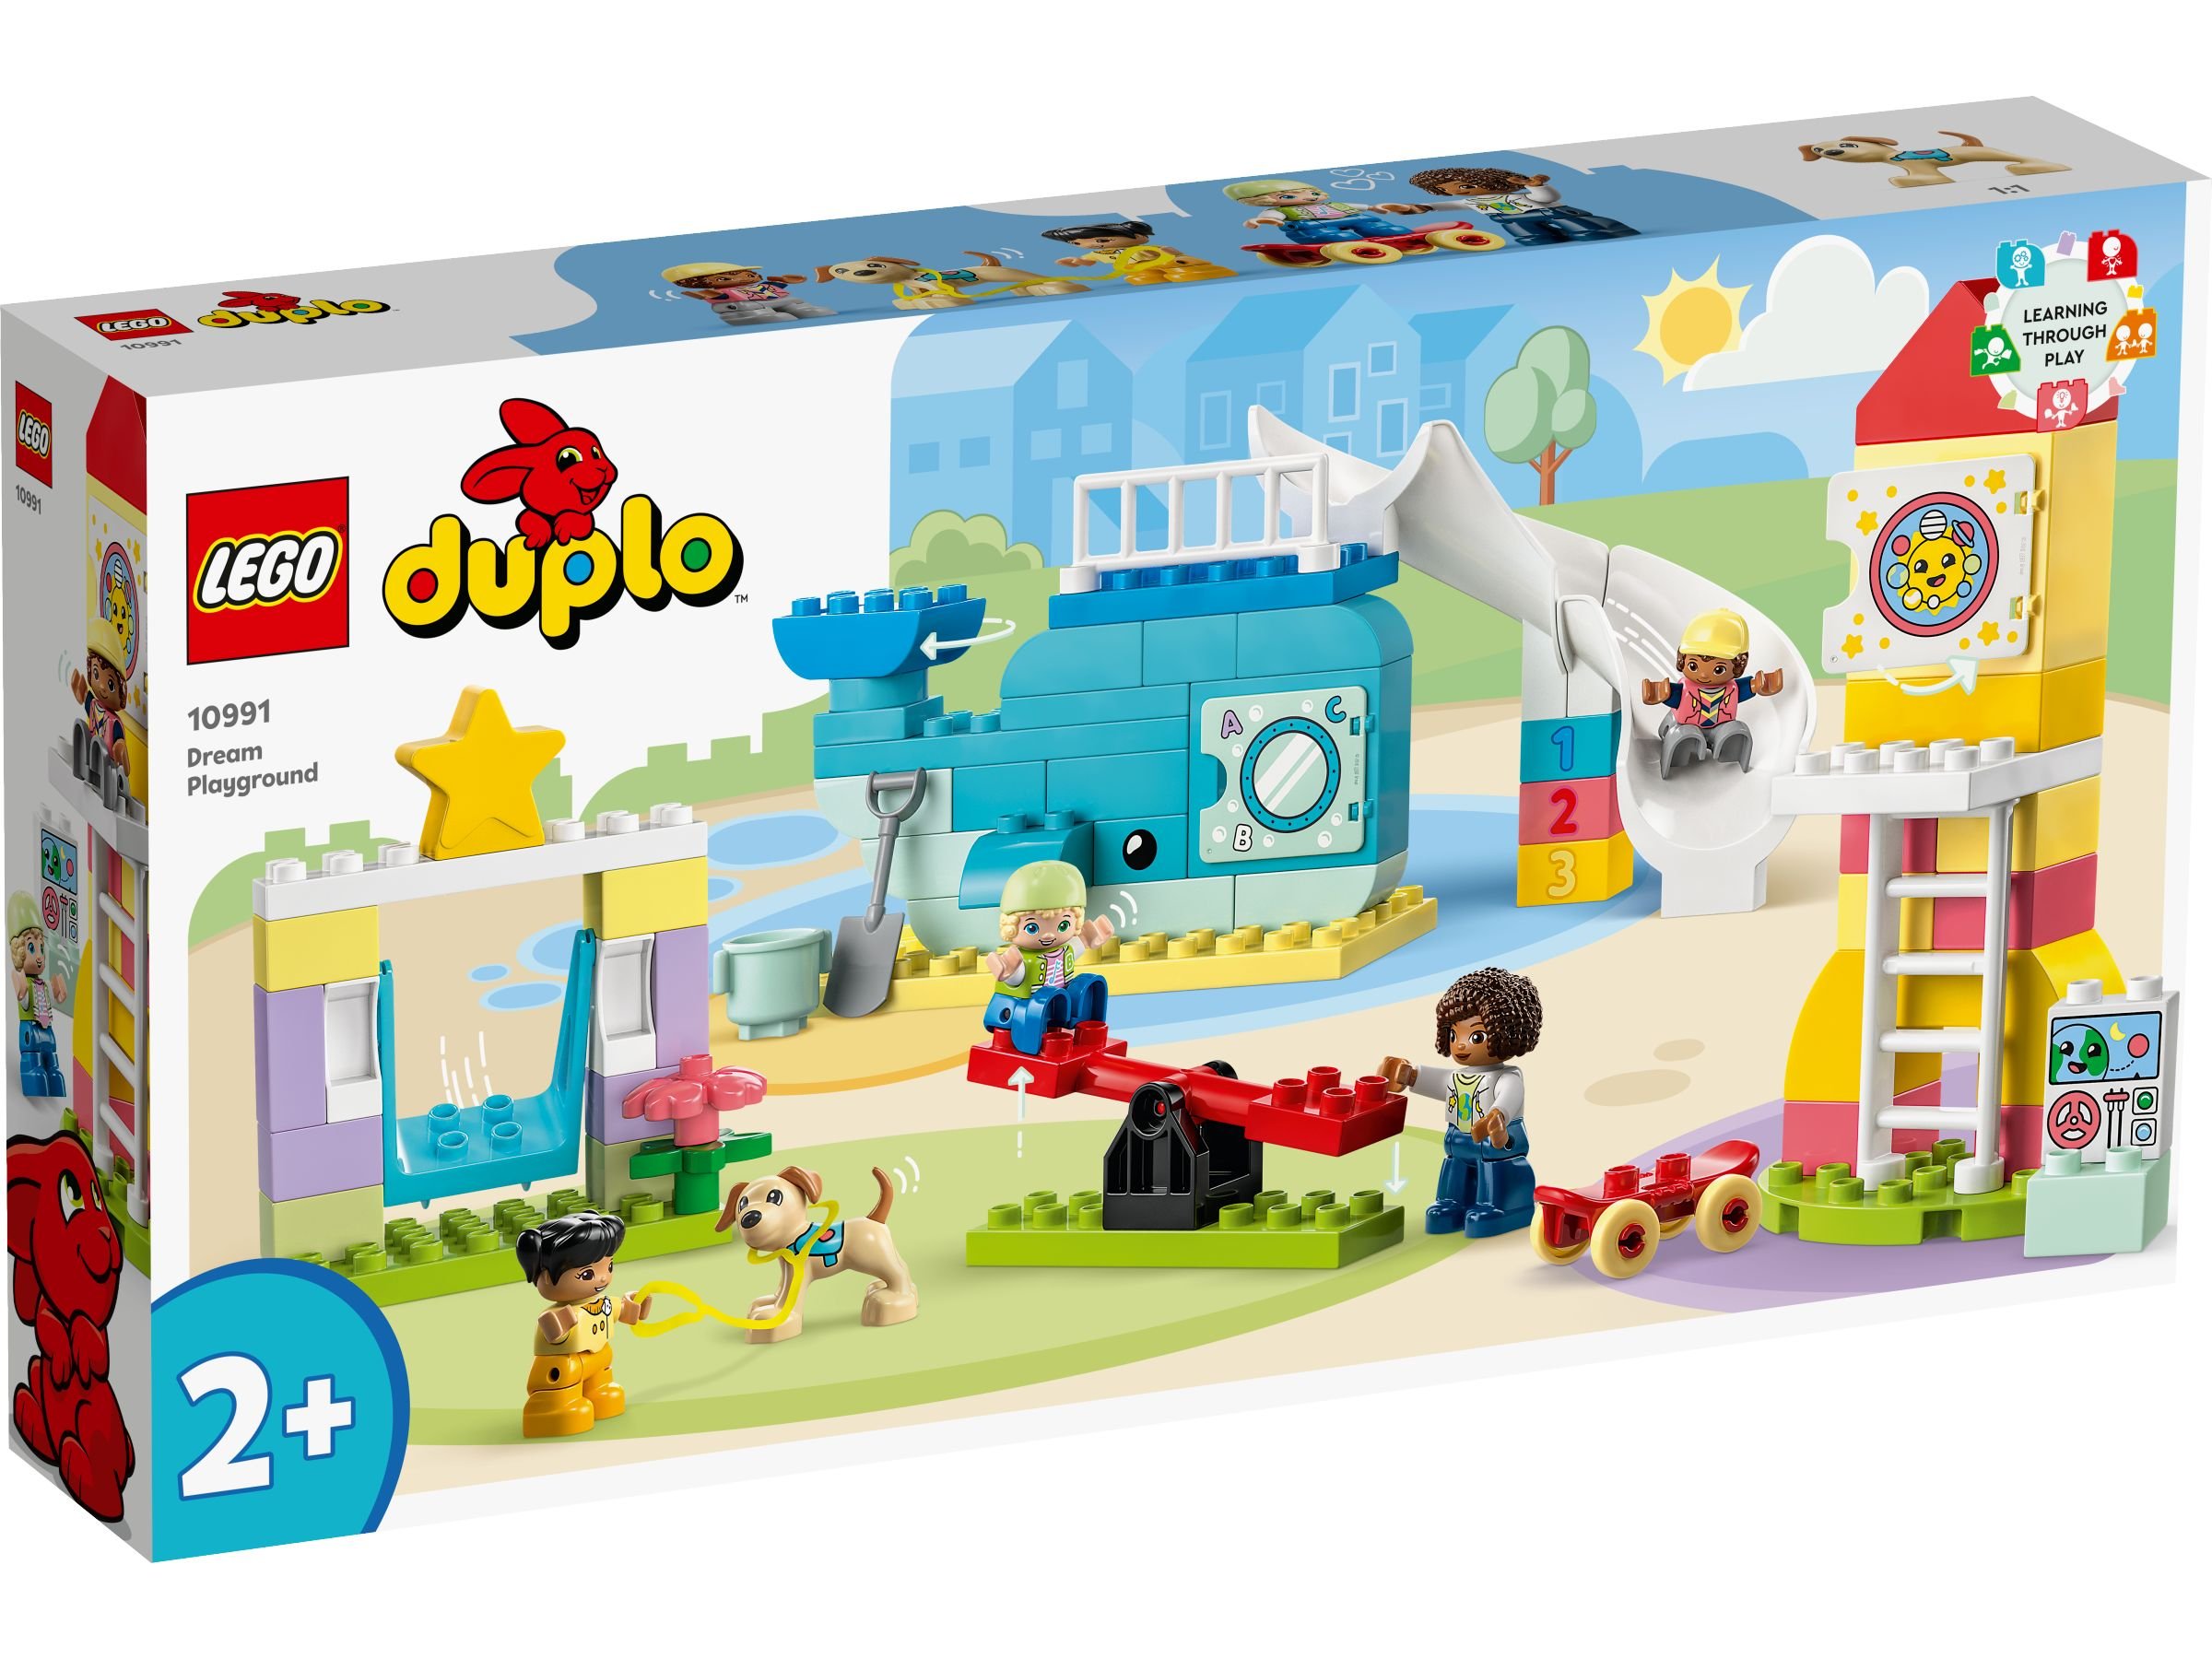 LEGO Duplo 10991 Traumspielplatz LEGO_10991_Box1_v29.jpg